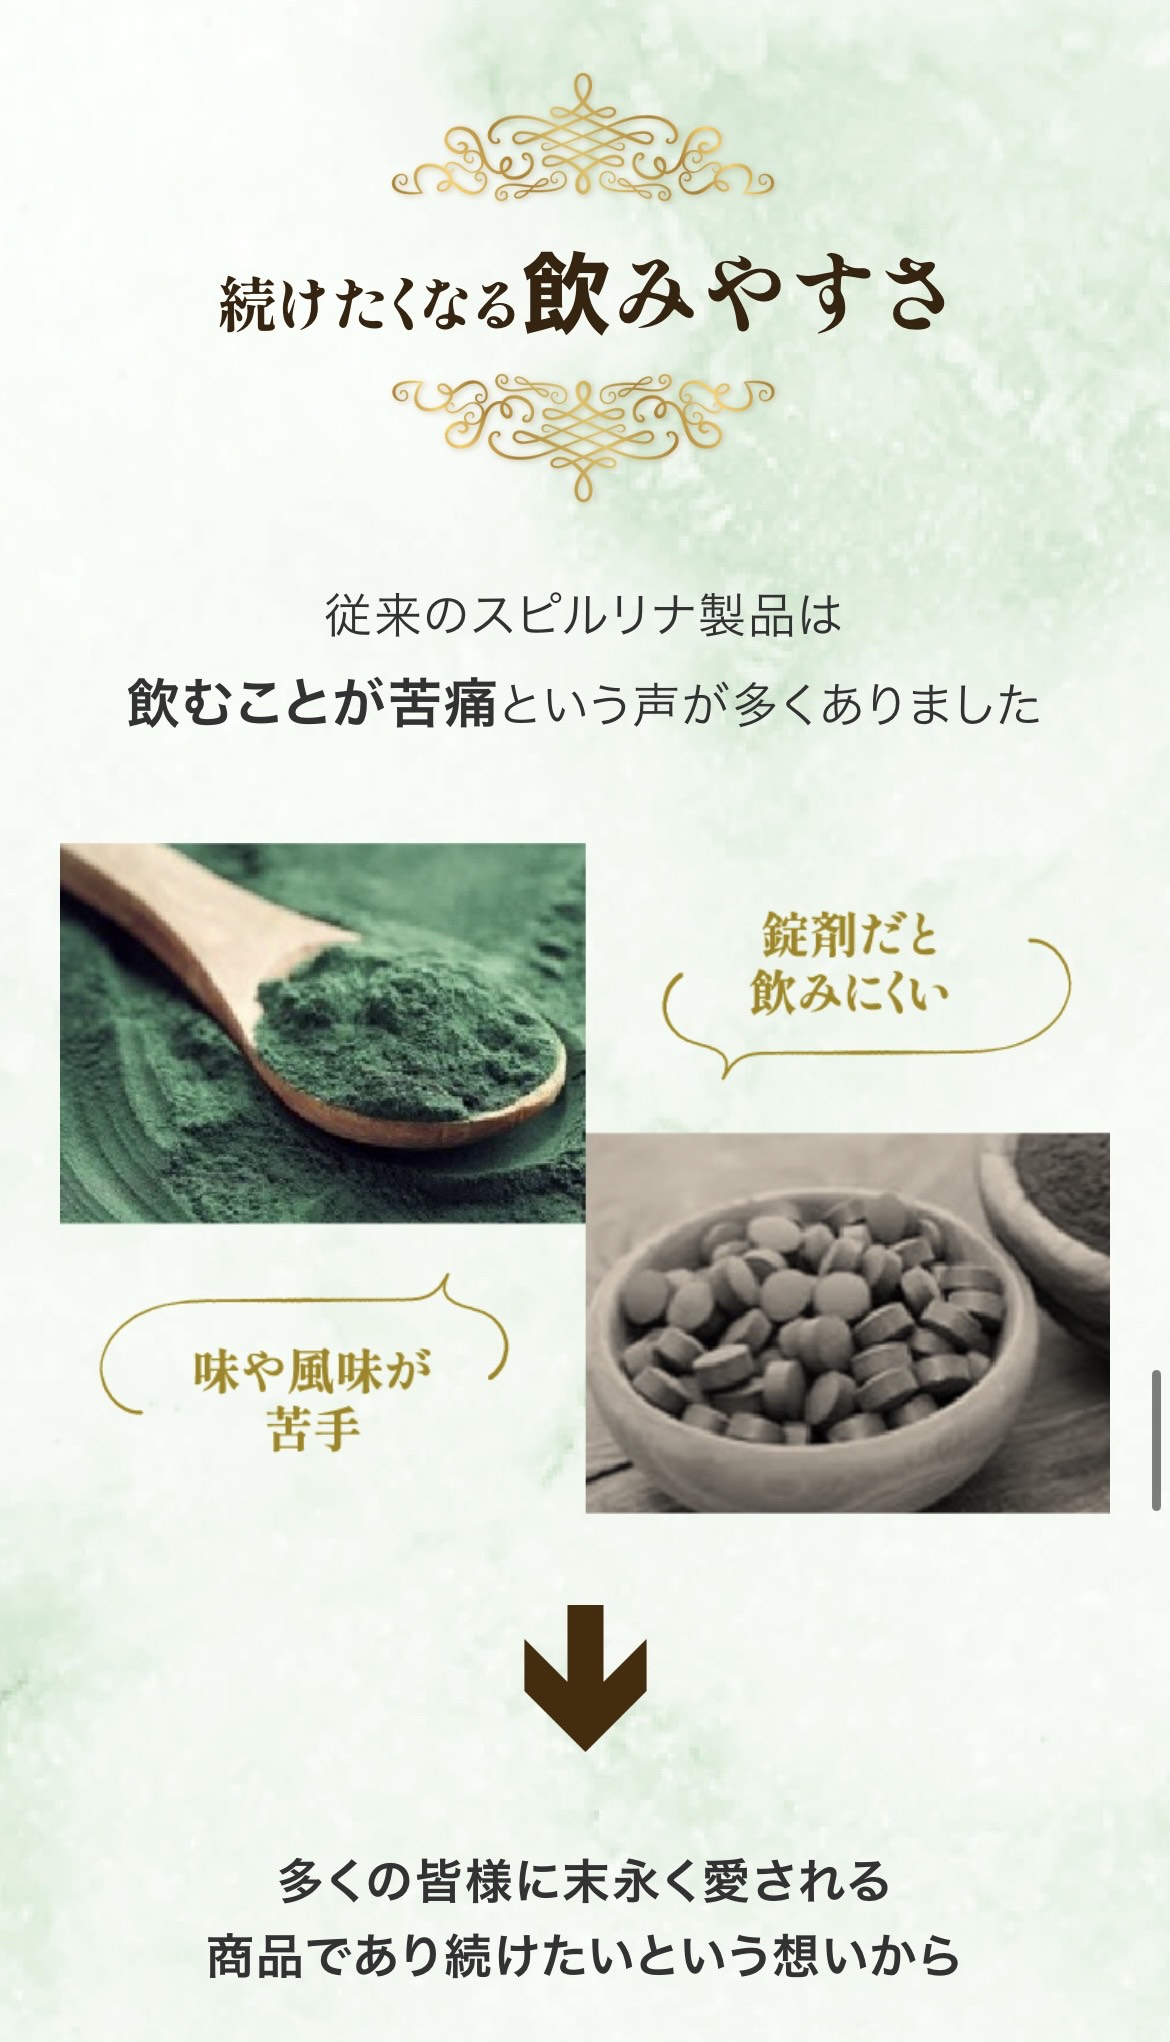 Siêu vi tảo uống Spirulina 300 triệu Hayari - Hàng Nhật nội địa